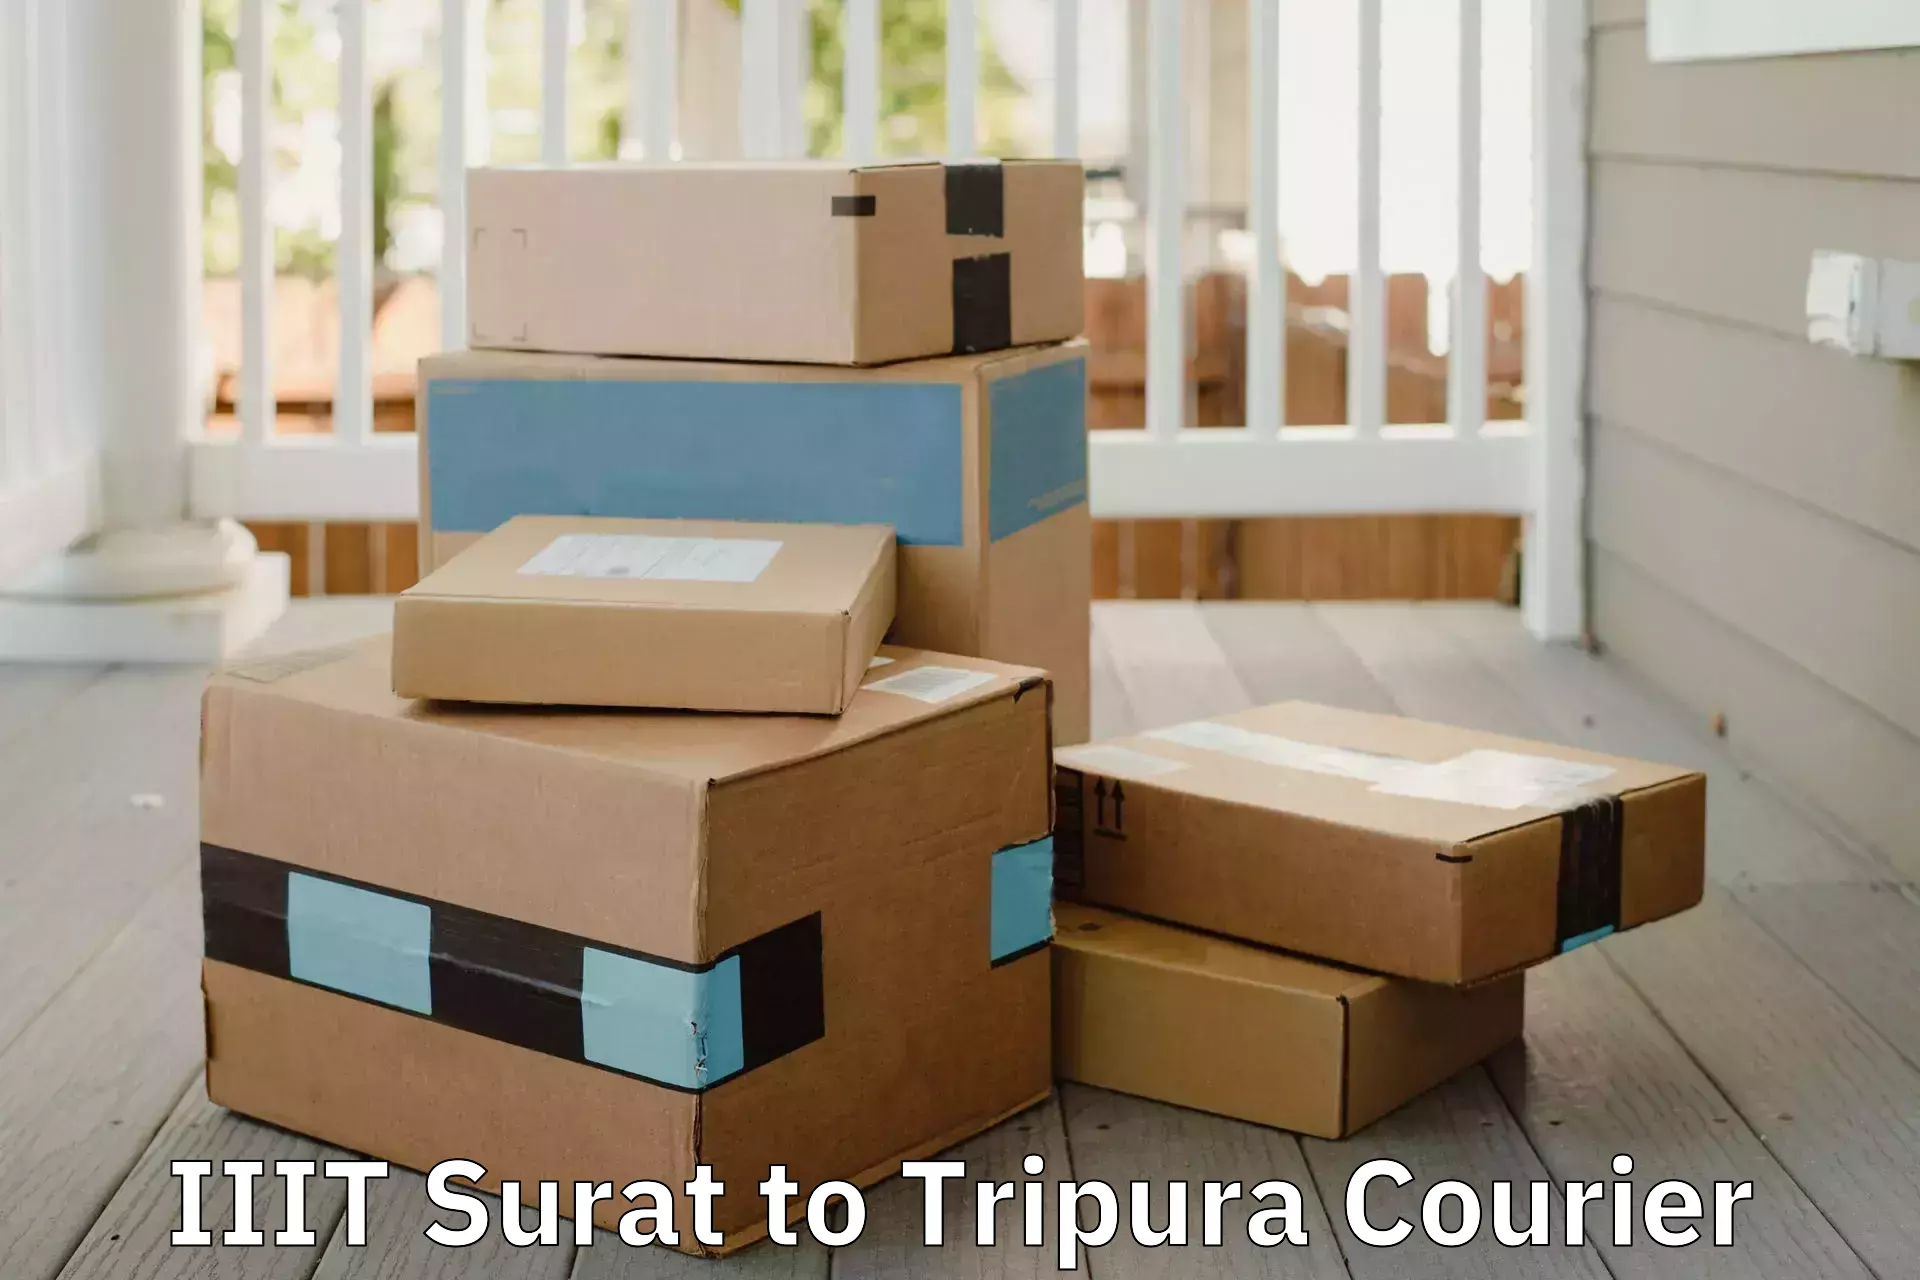 Furniture transport professionals IIIT Surat to Udaipur Tripura